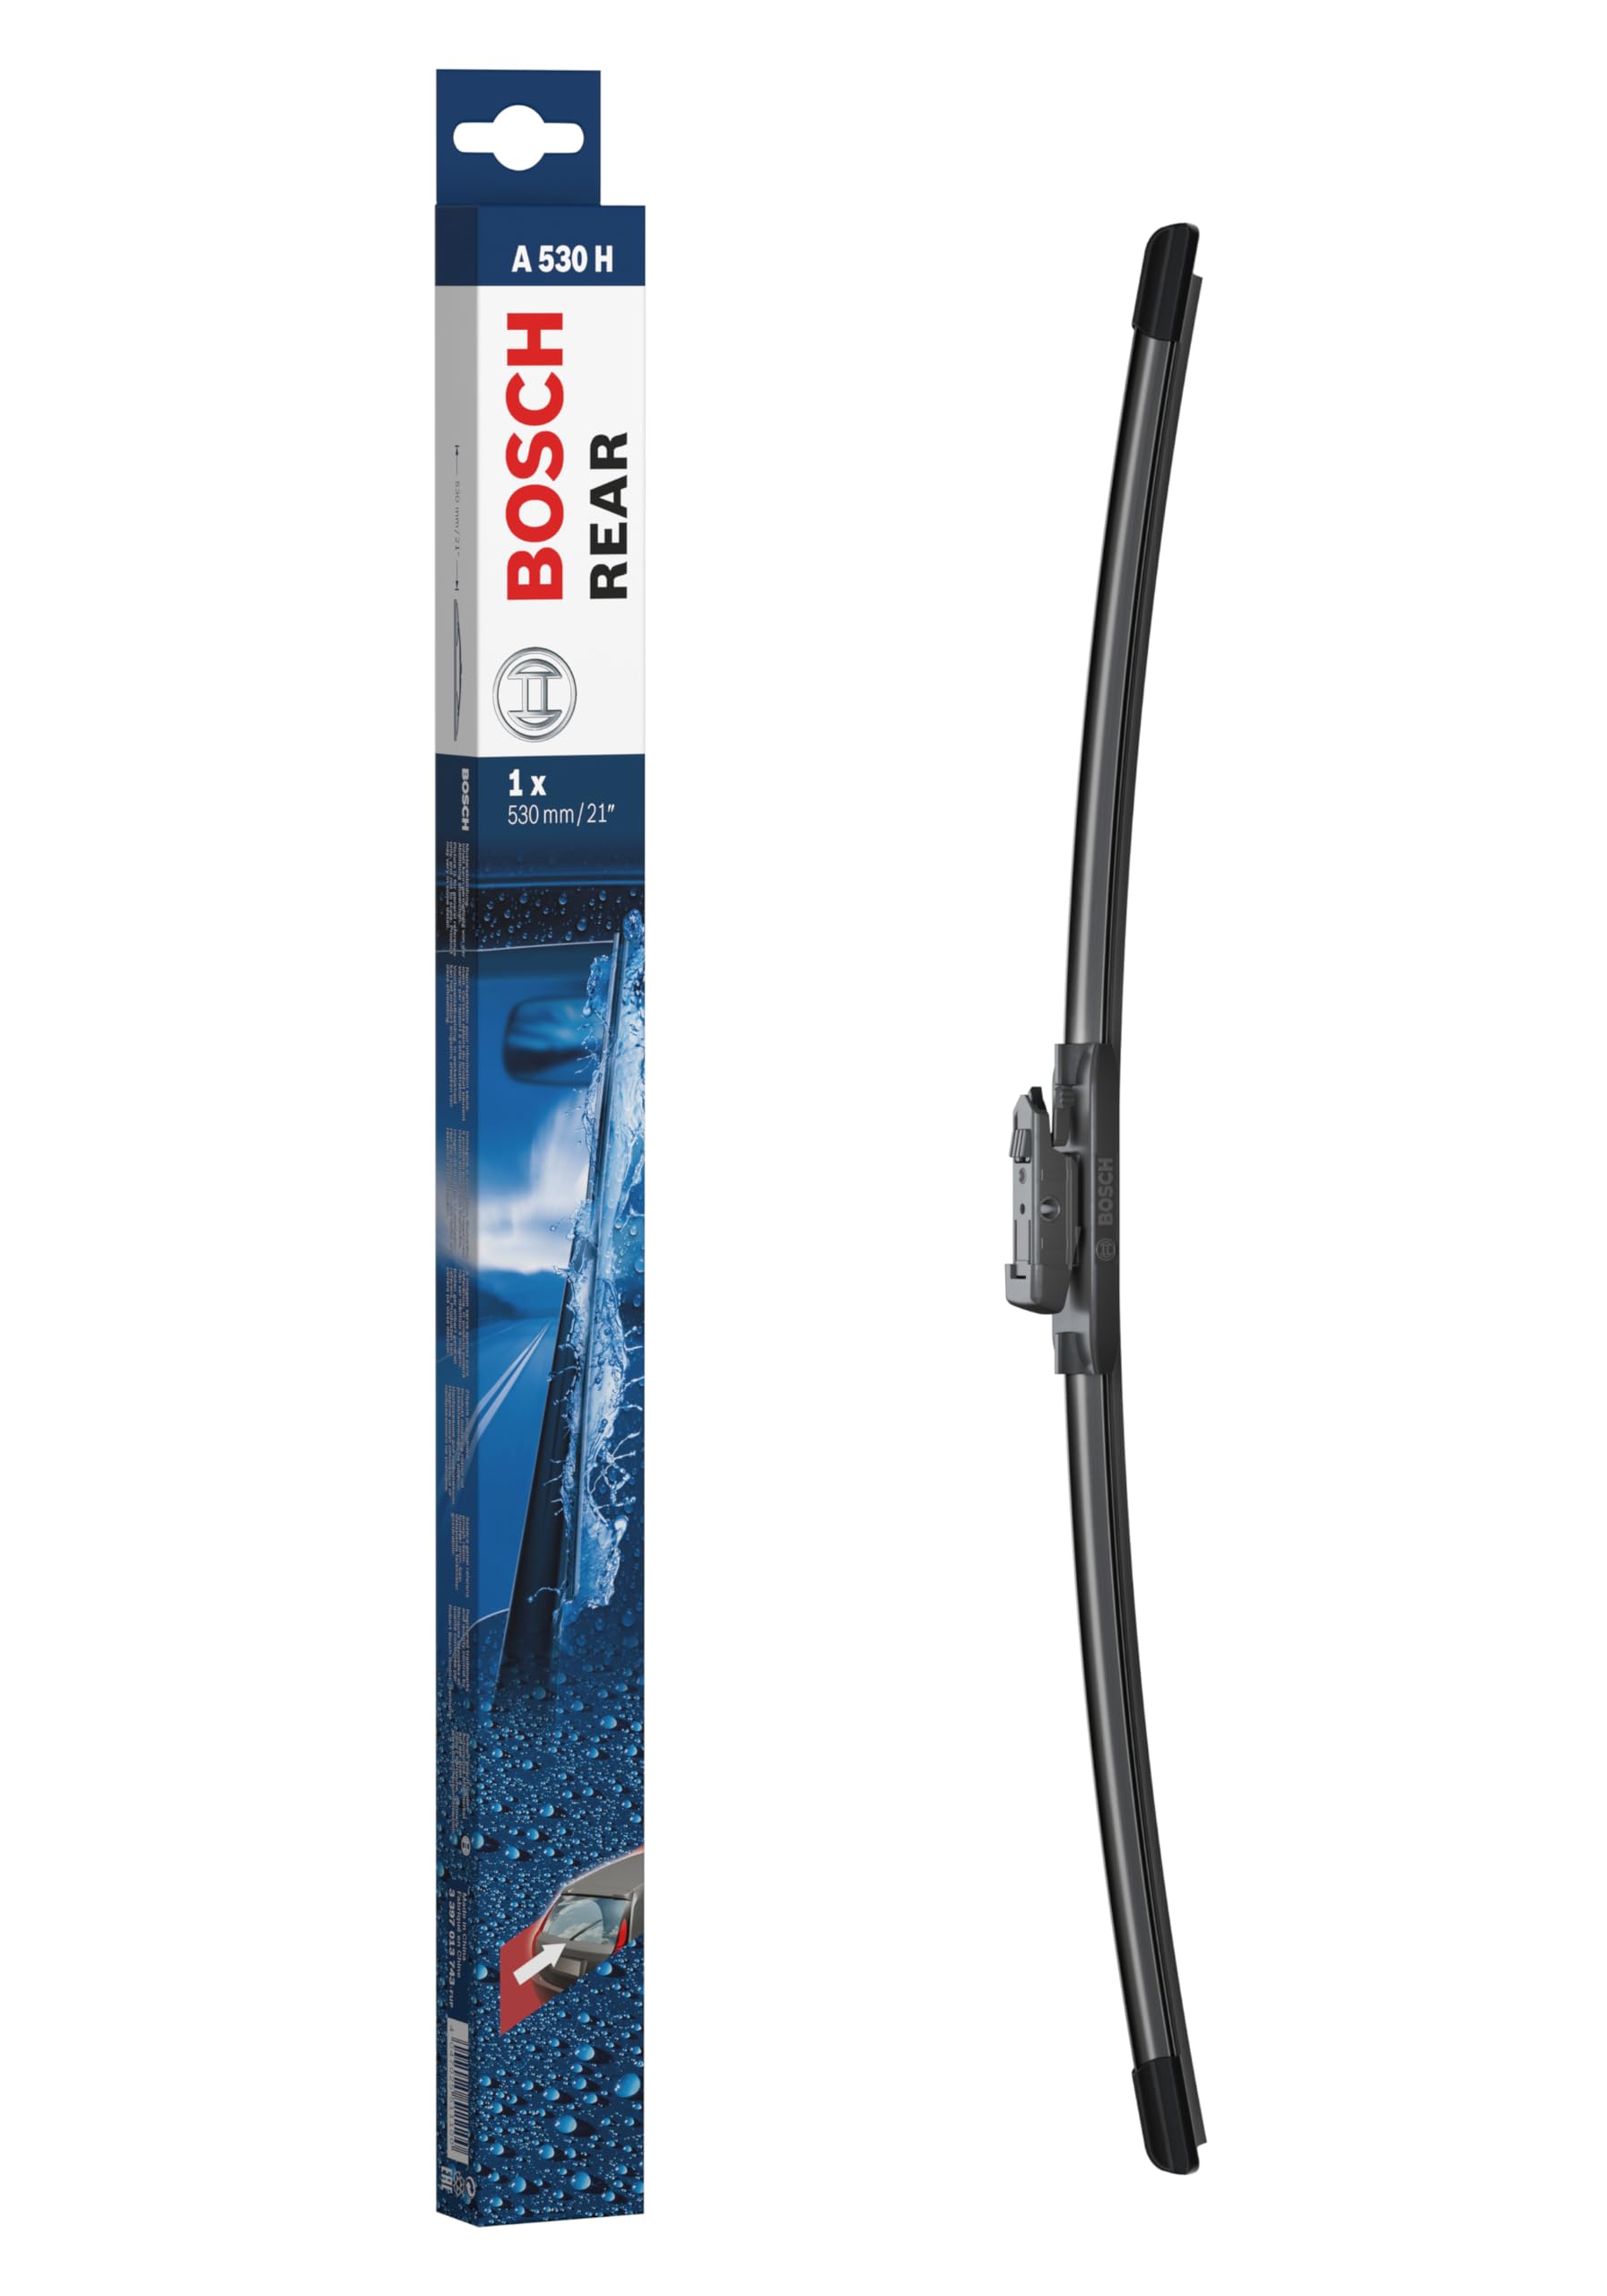 Bosch Scheibenwischer Rear A530H, Länge: 530mm – Scheibenwischer für Heckscheibe von Bosch Automotive